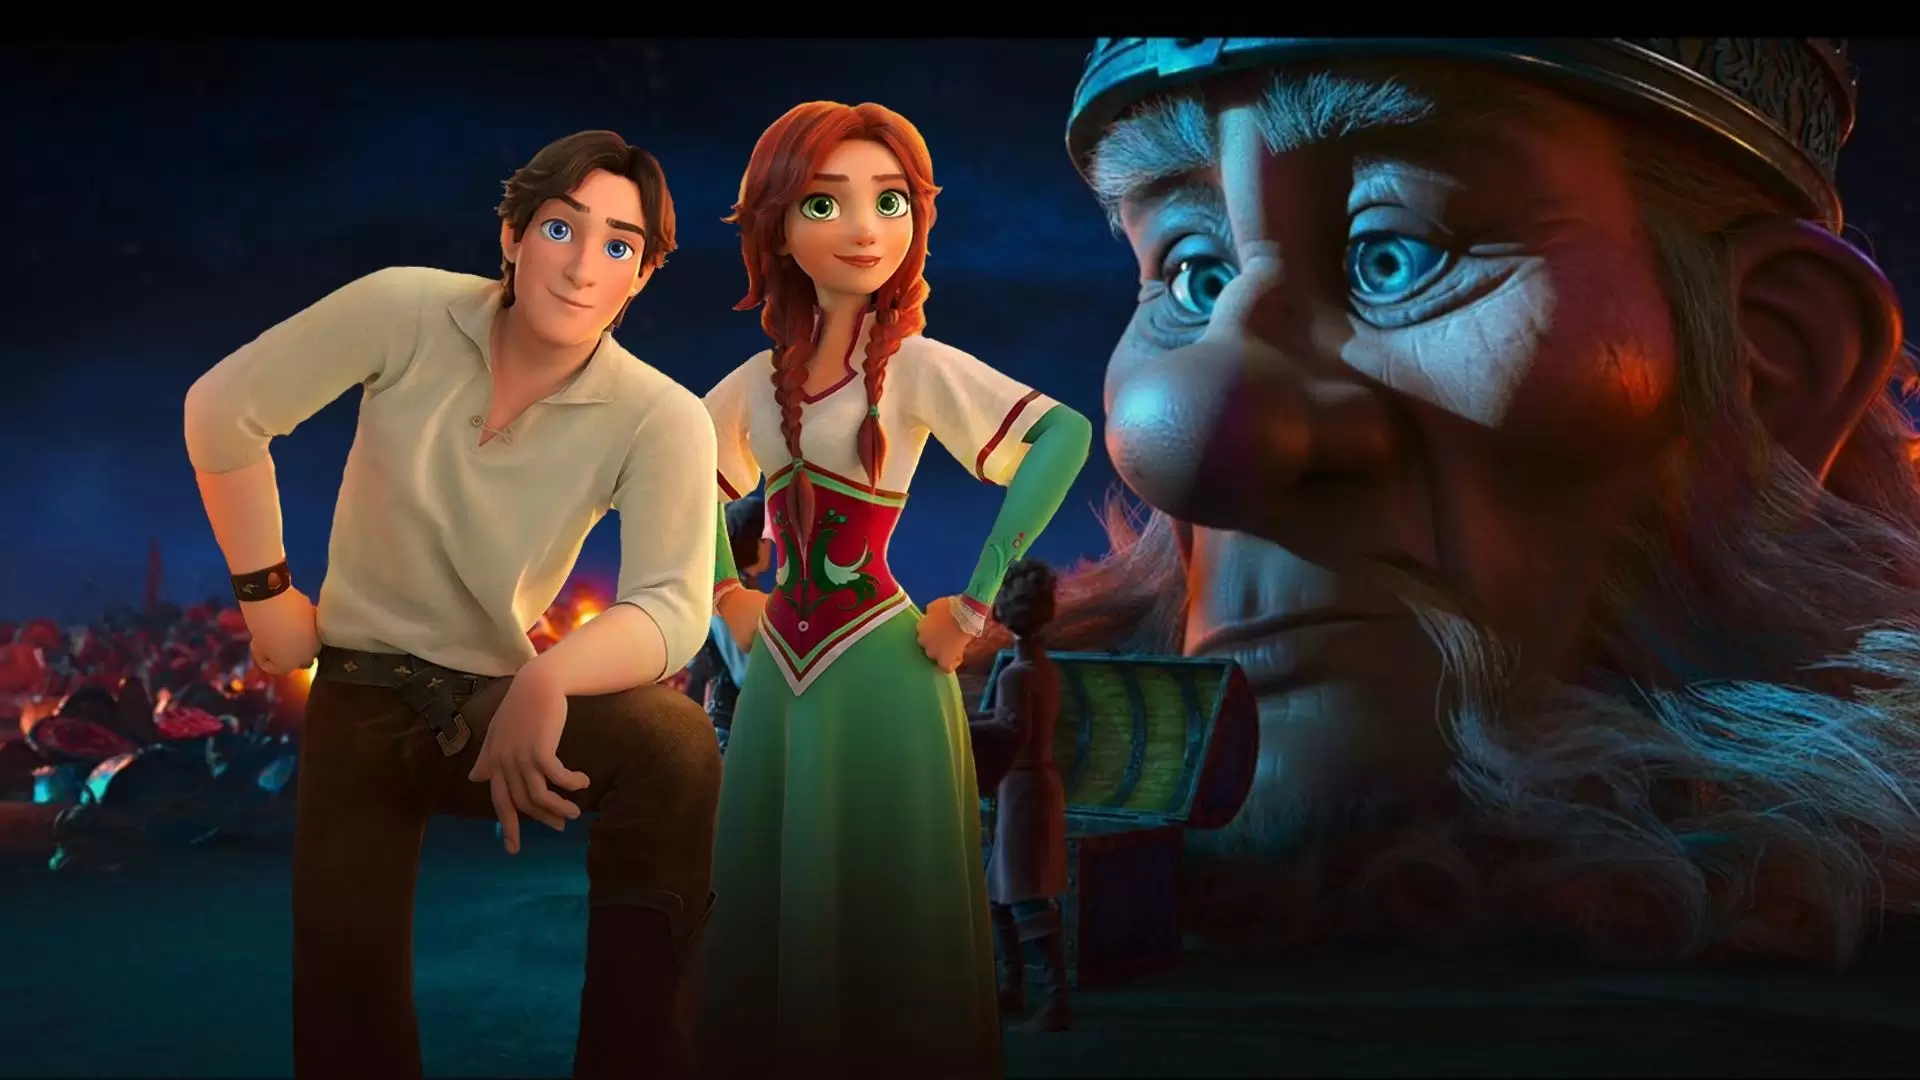 دانلود انیمیشن Stolen princess: Ruslan and Ludmila 2018 (شاهزادهٔ ربوده شده) با تماشای آنلاین